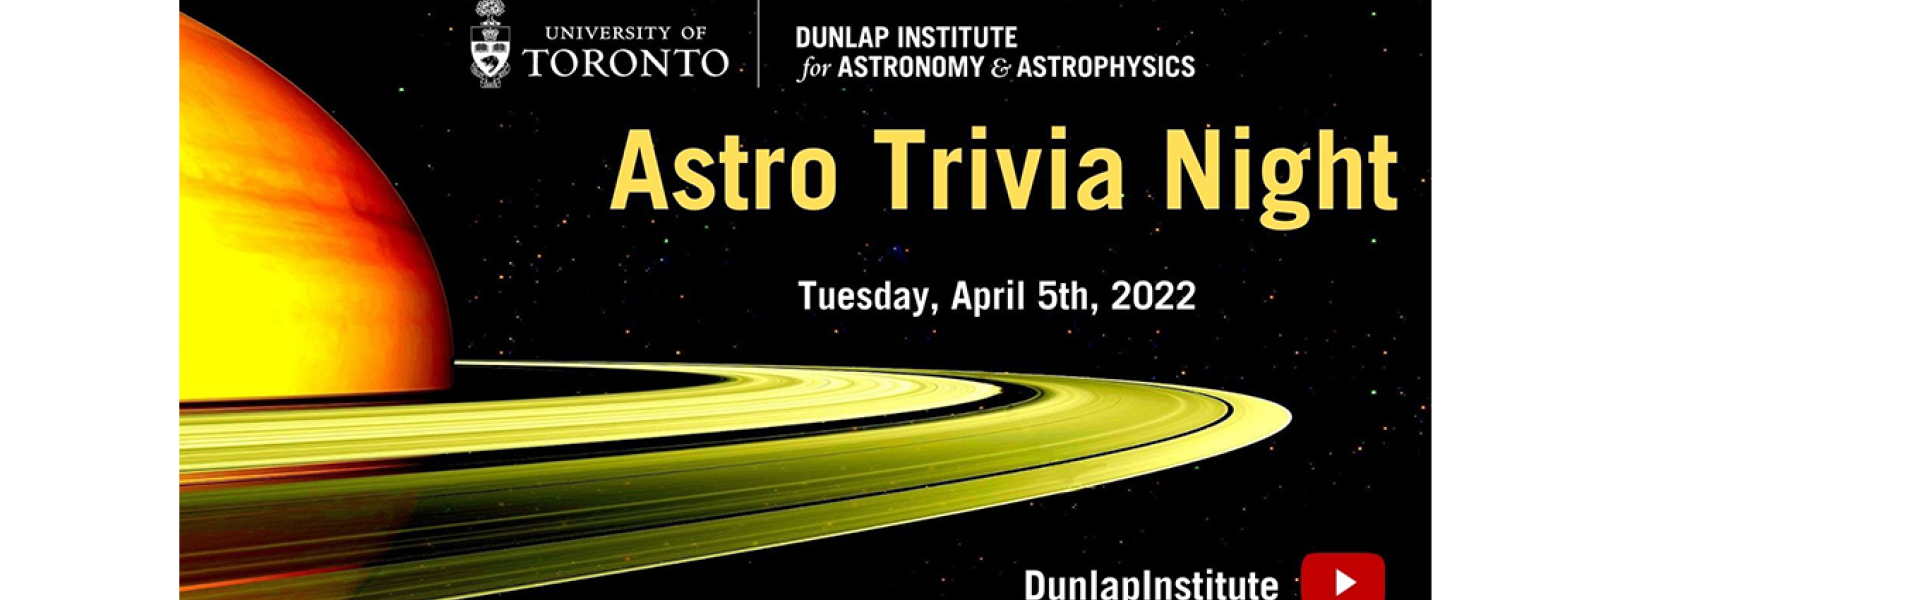 Astro Trivia Night - April 5th, 2022